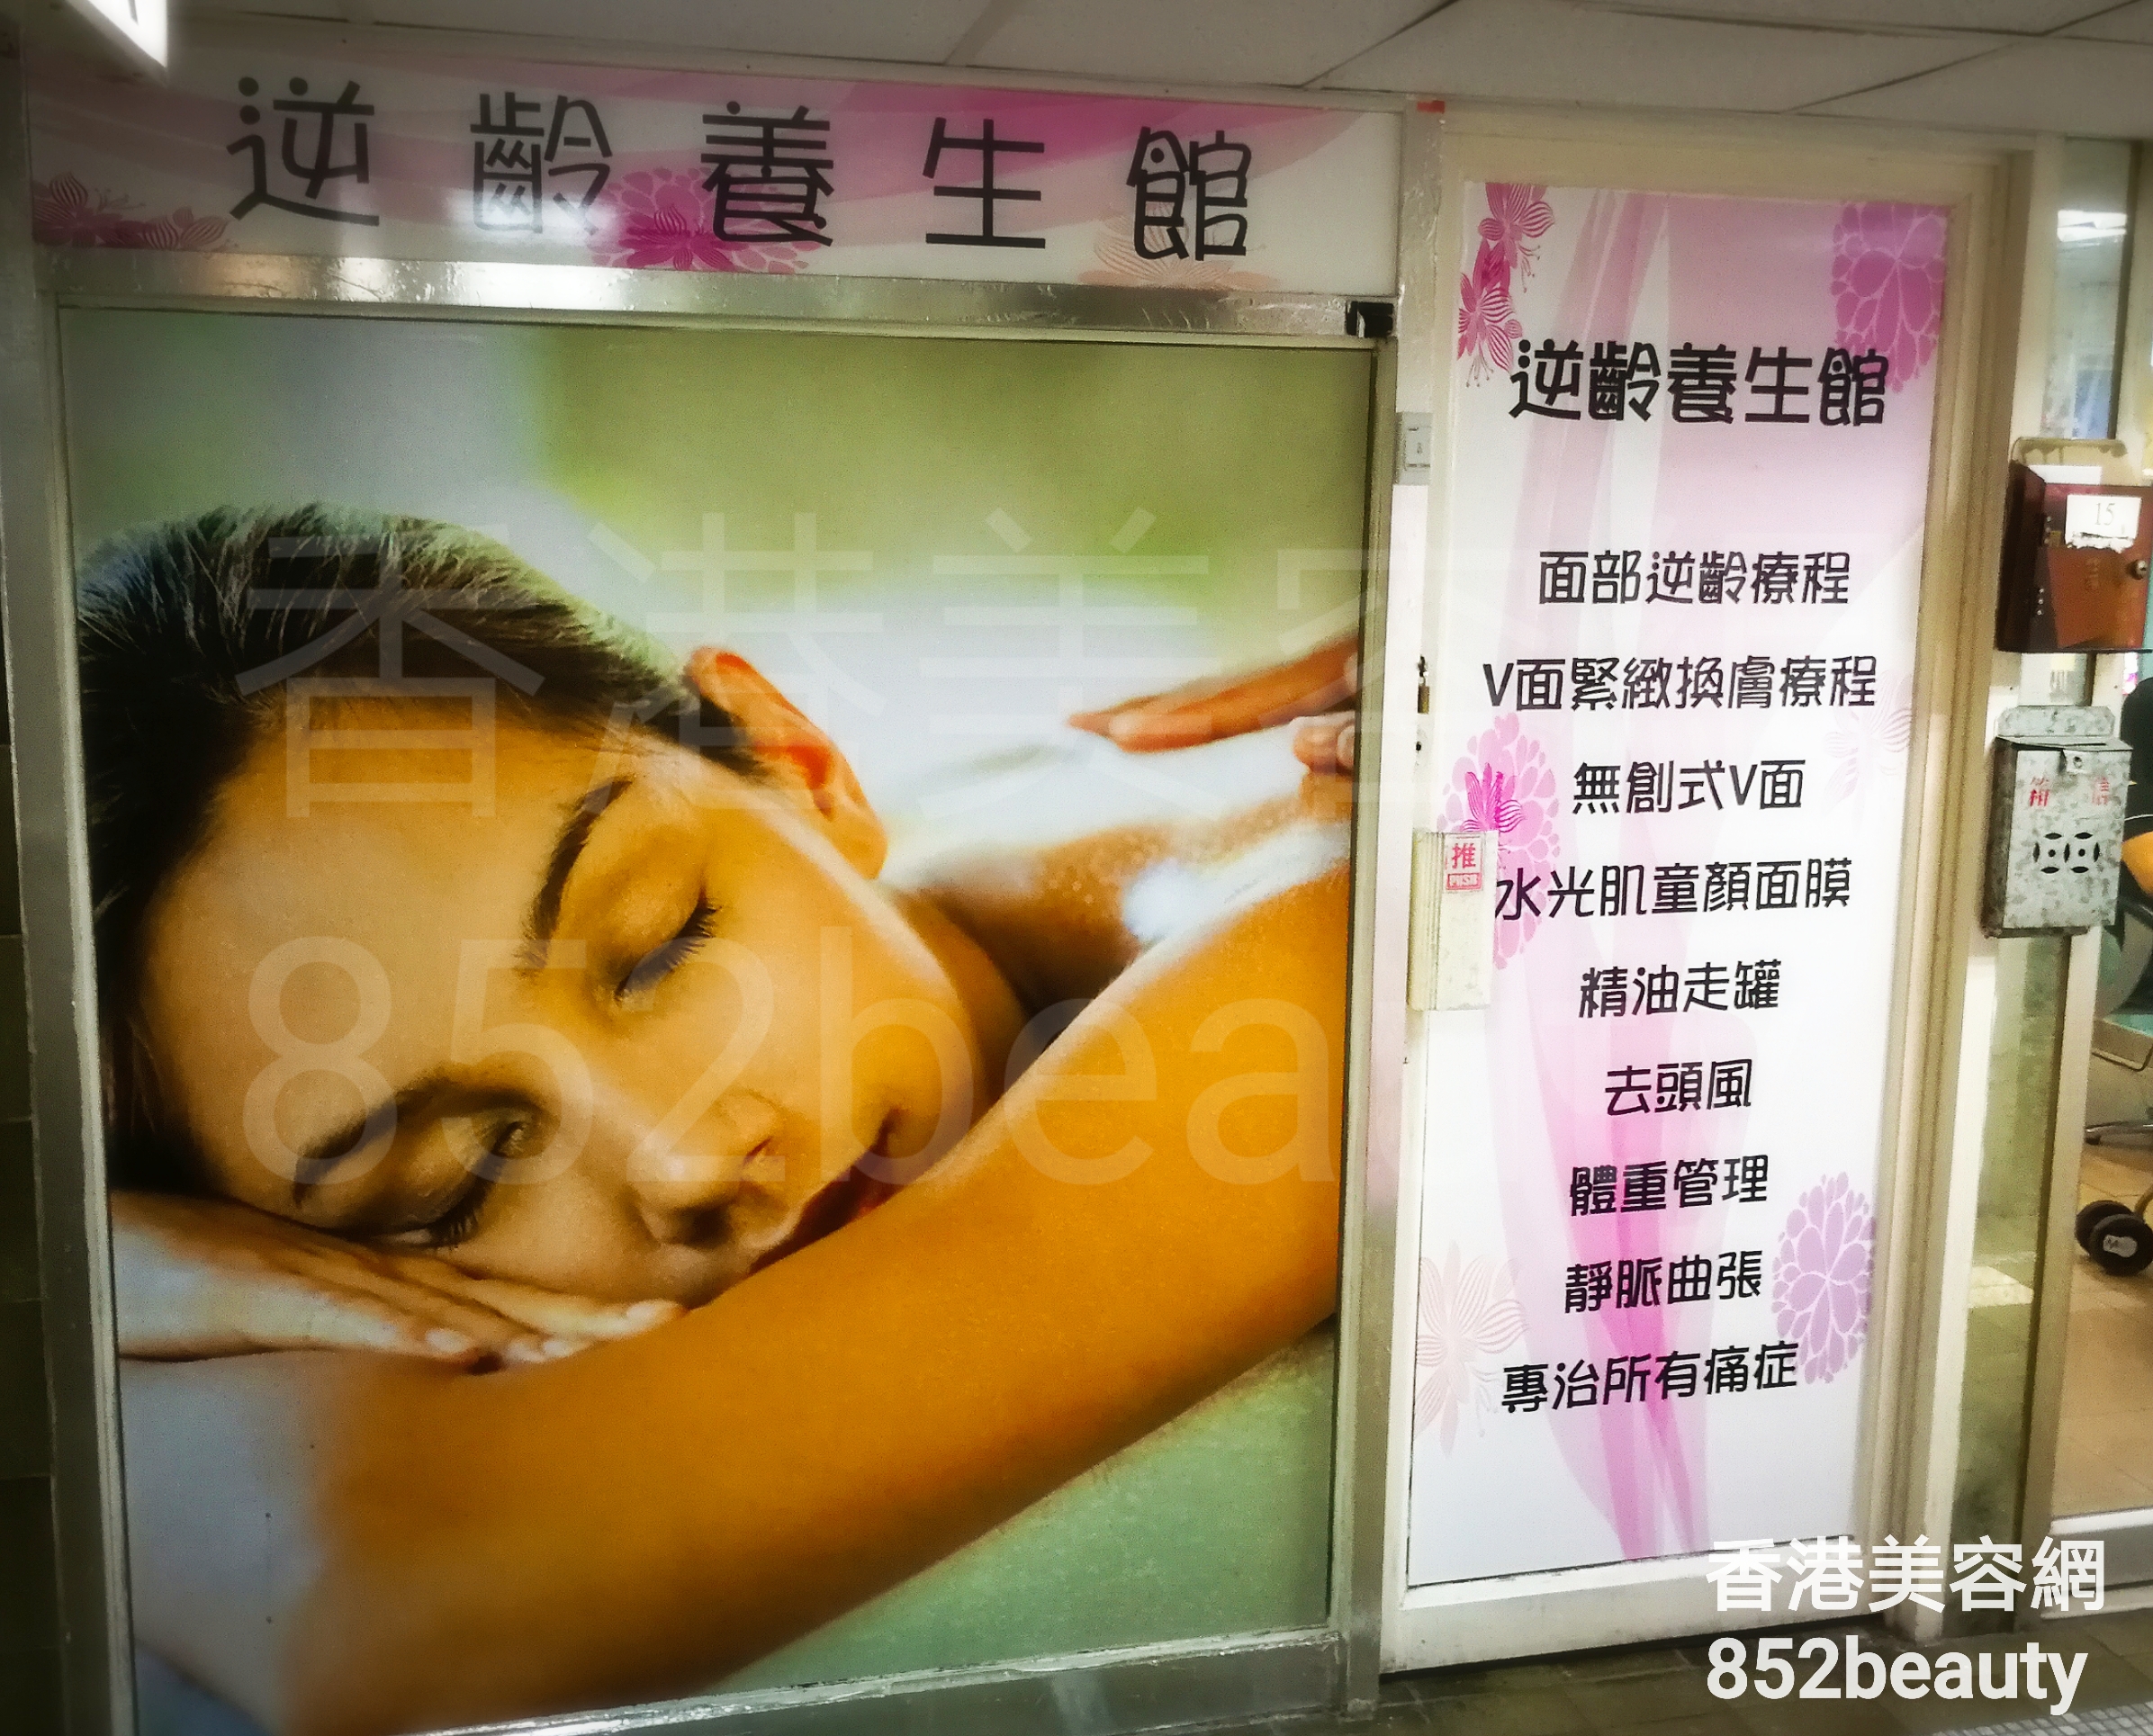 香港美容網 Hong Kong Beauty Salon 美容院 / 美容師: 逆轉養生館